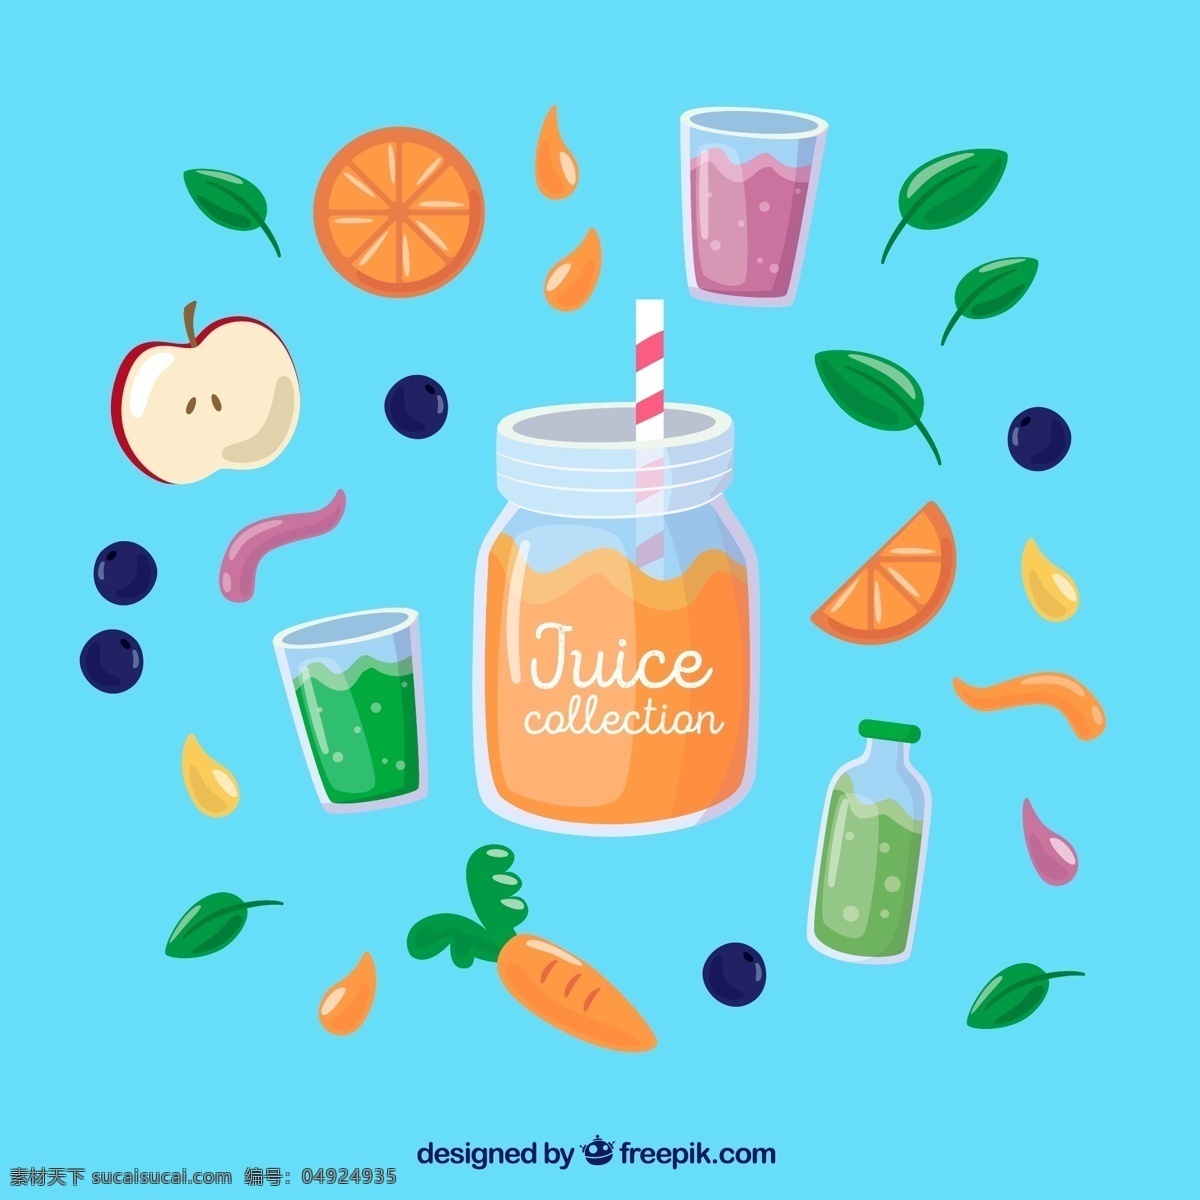 款 彩色 水果 果汁 矢量 苹果 蓝莓 叶子 健康 橙子 胡萝卜 蓝莓汁 橙汁